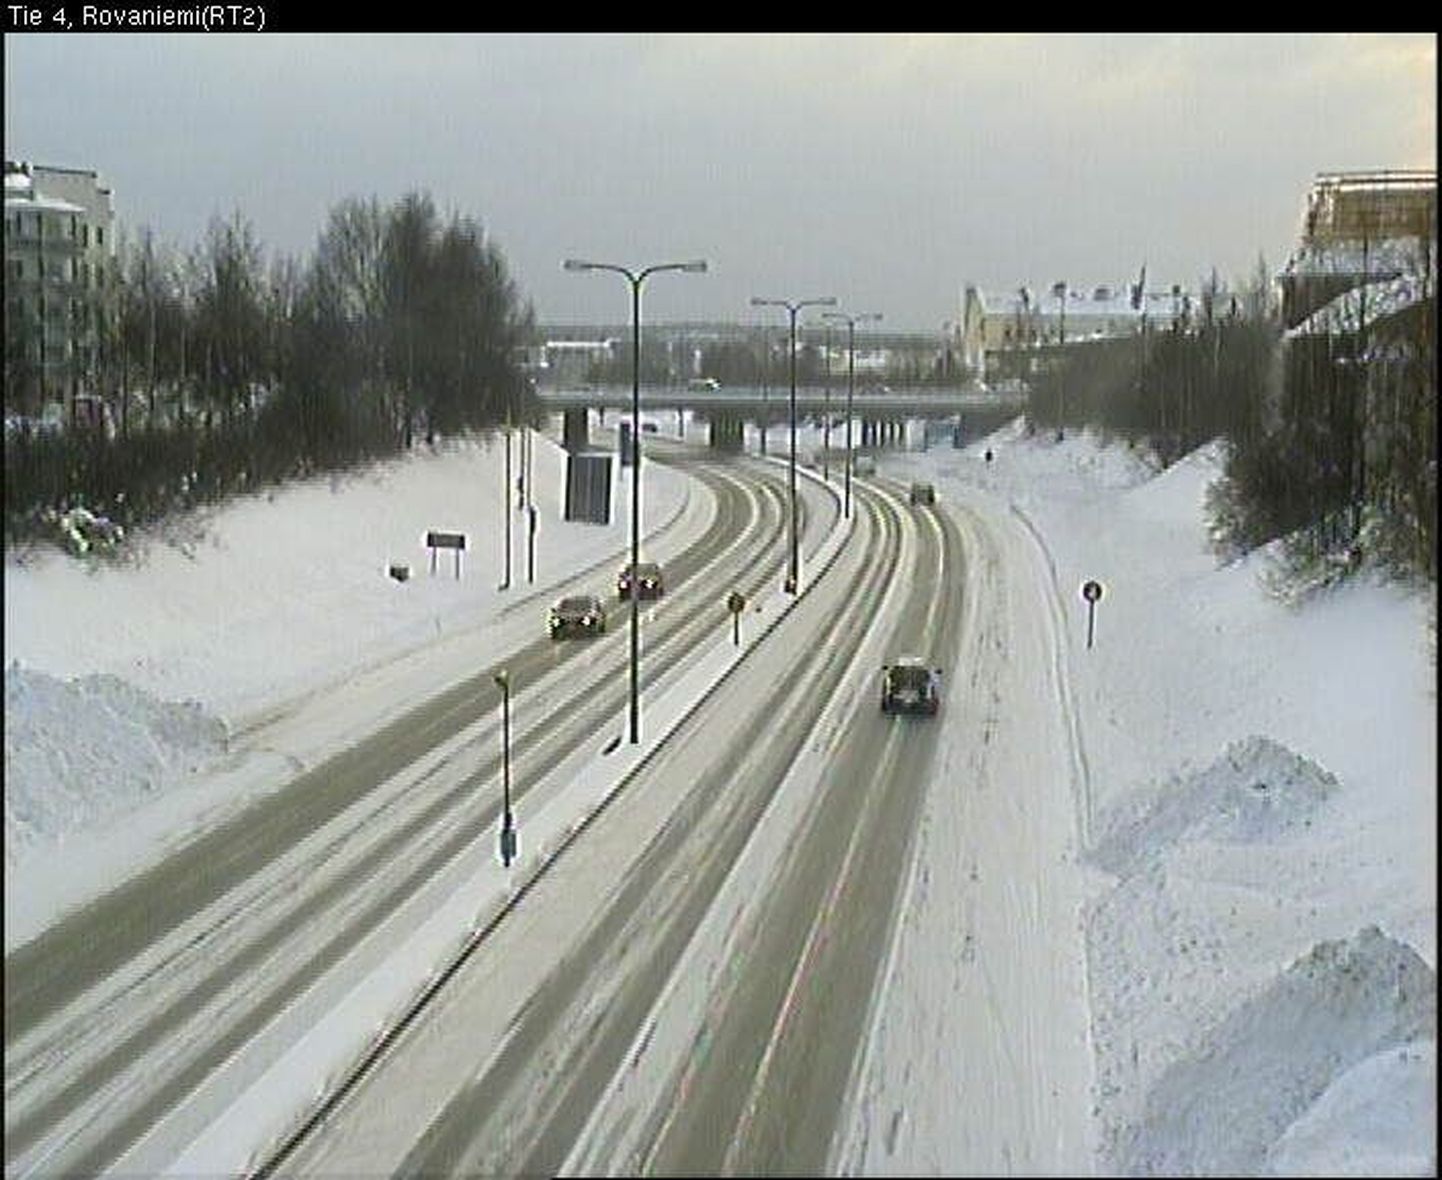 Lumine Rovaniemi. Pilt on pärit maanteekaamerast kell 15.49 Kemisse suunduval teel.